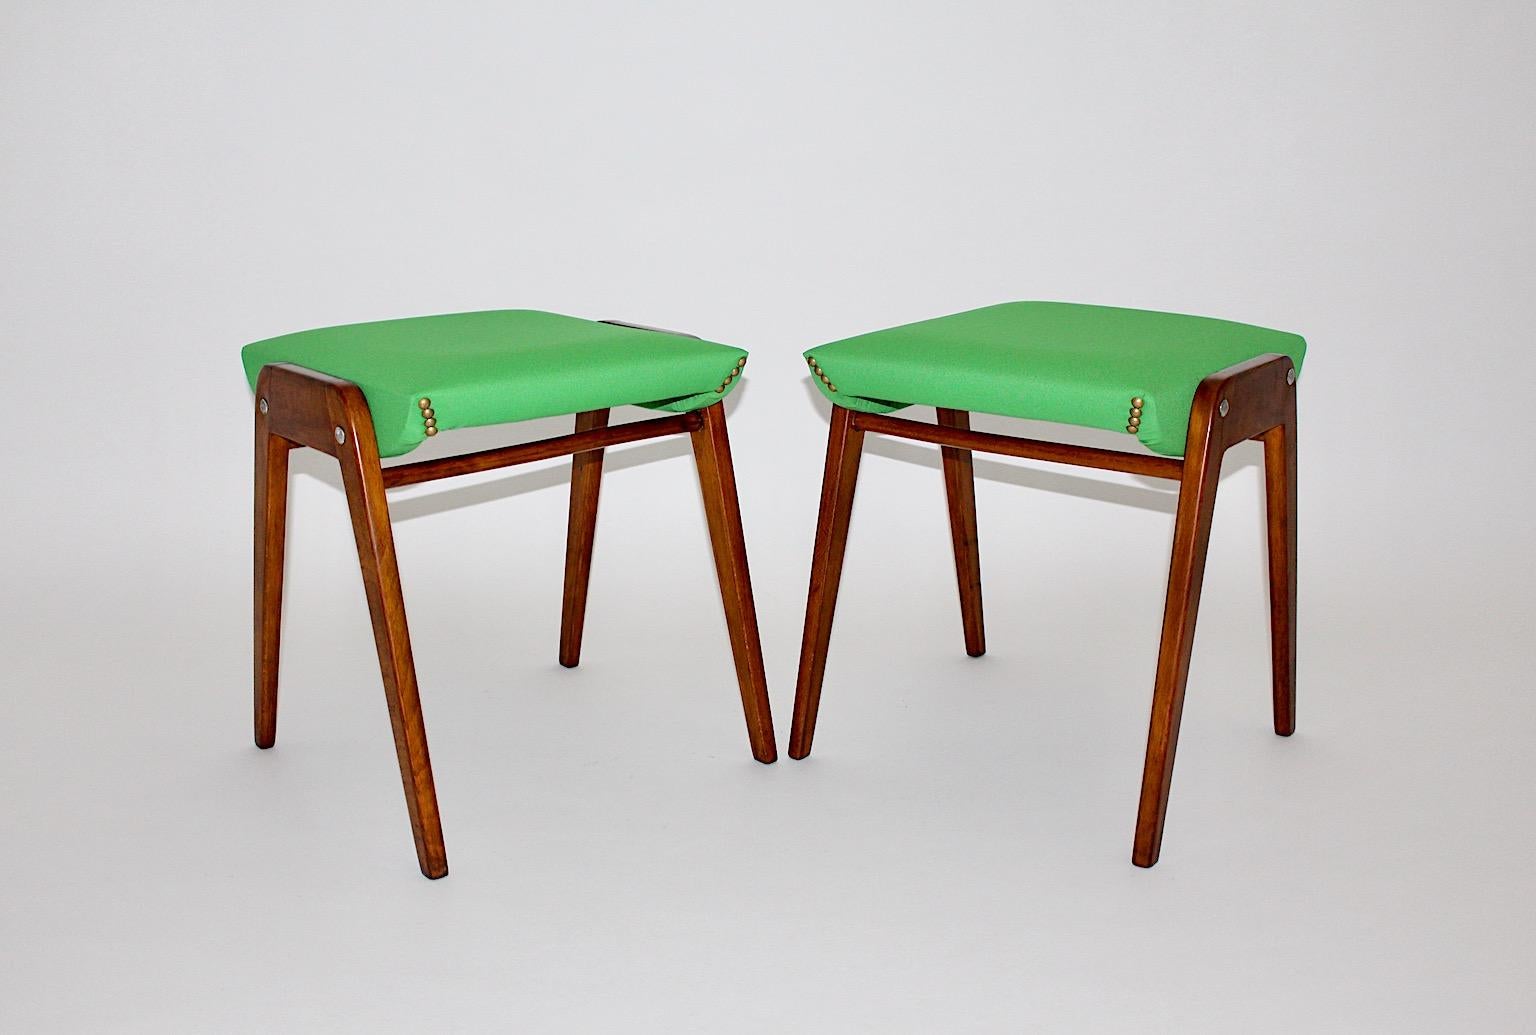 Mid Century Modern vintage Hockerpaar Modell SW 2 aus Buche von Roland Rainer um 1955 Österreich.
Der Sitz ist mit einem hellgrünen Stoff neu gepolstert, das Gestell aus Buche ist von Hand schellackpoliert.
Kräftige frische Farbe kombiniert mit